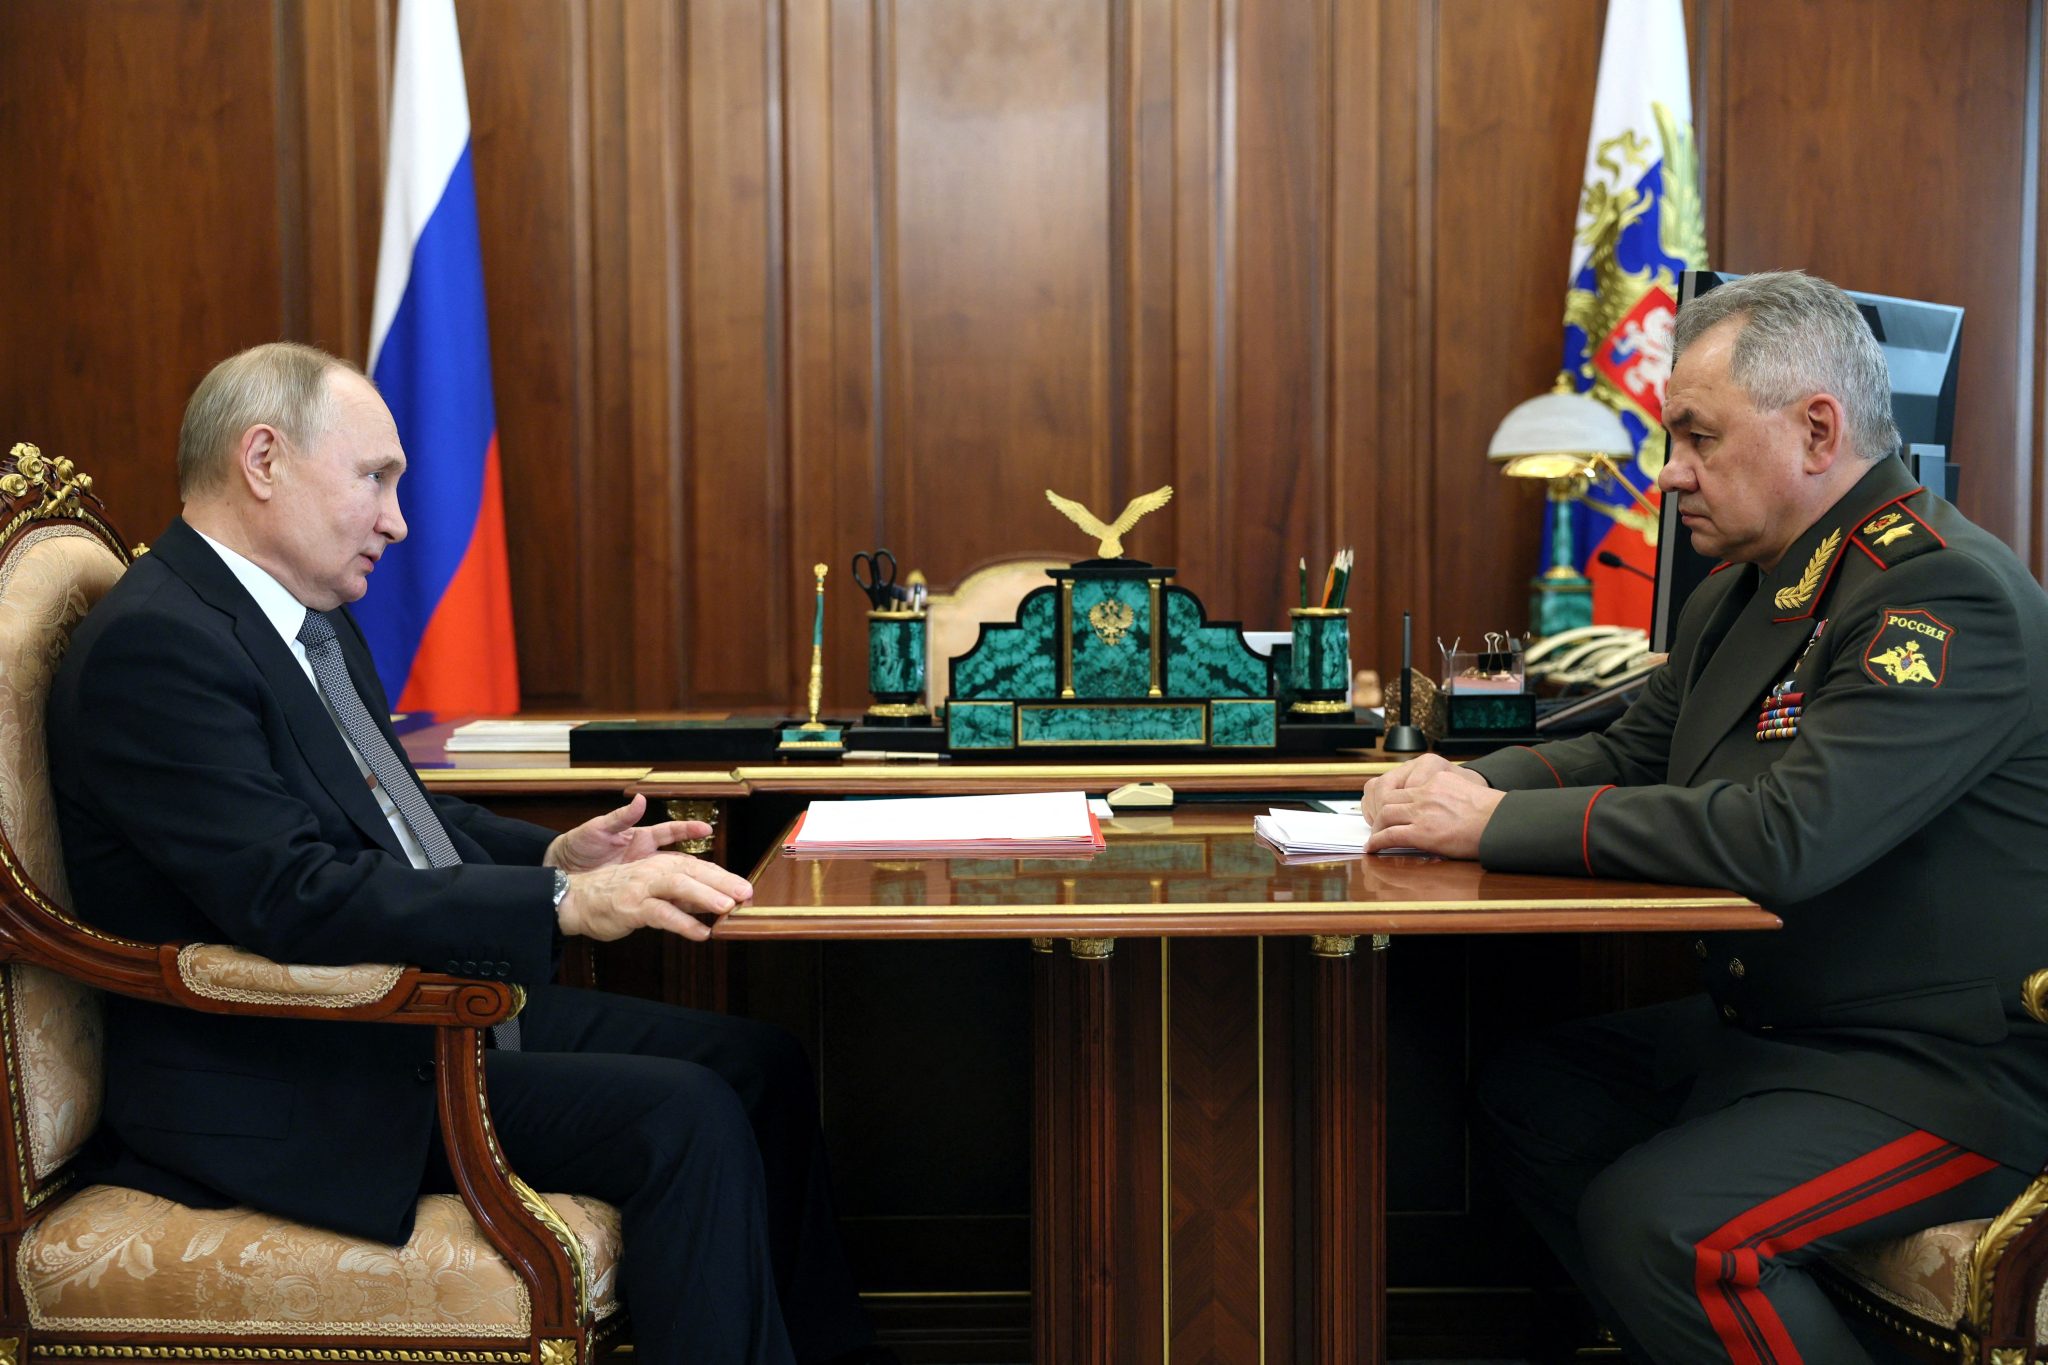 Και επίσημα η Αβντιίβκα υπό ρωσικό έλεγχο: Ο Σ.Σοϊγκού ενημέρωσε τον Β.Πούτιν